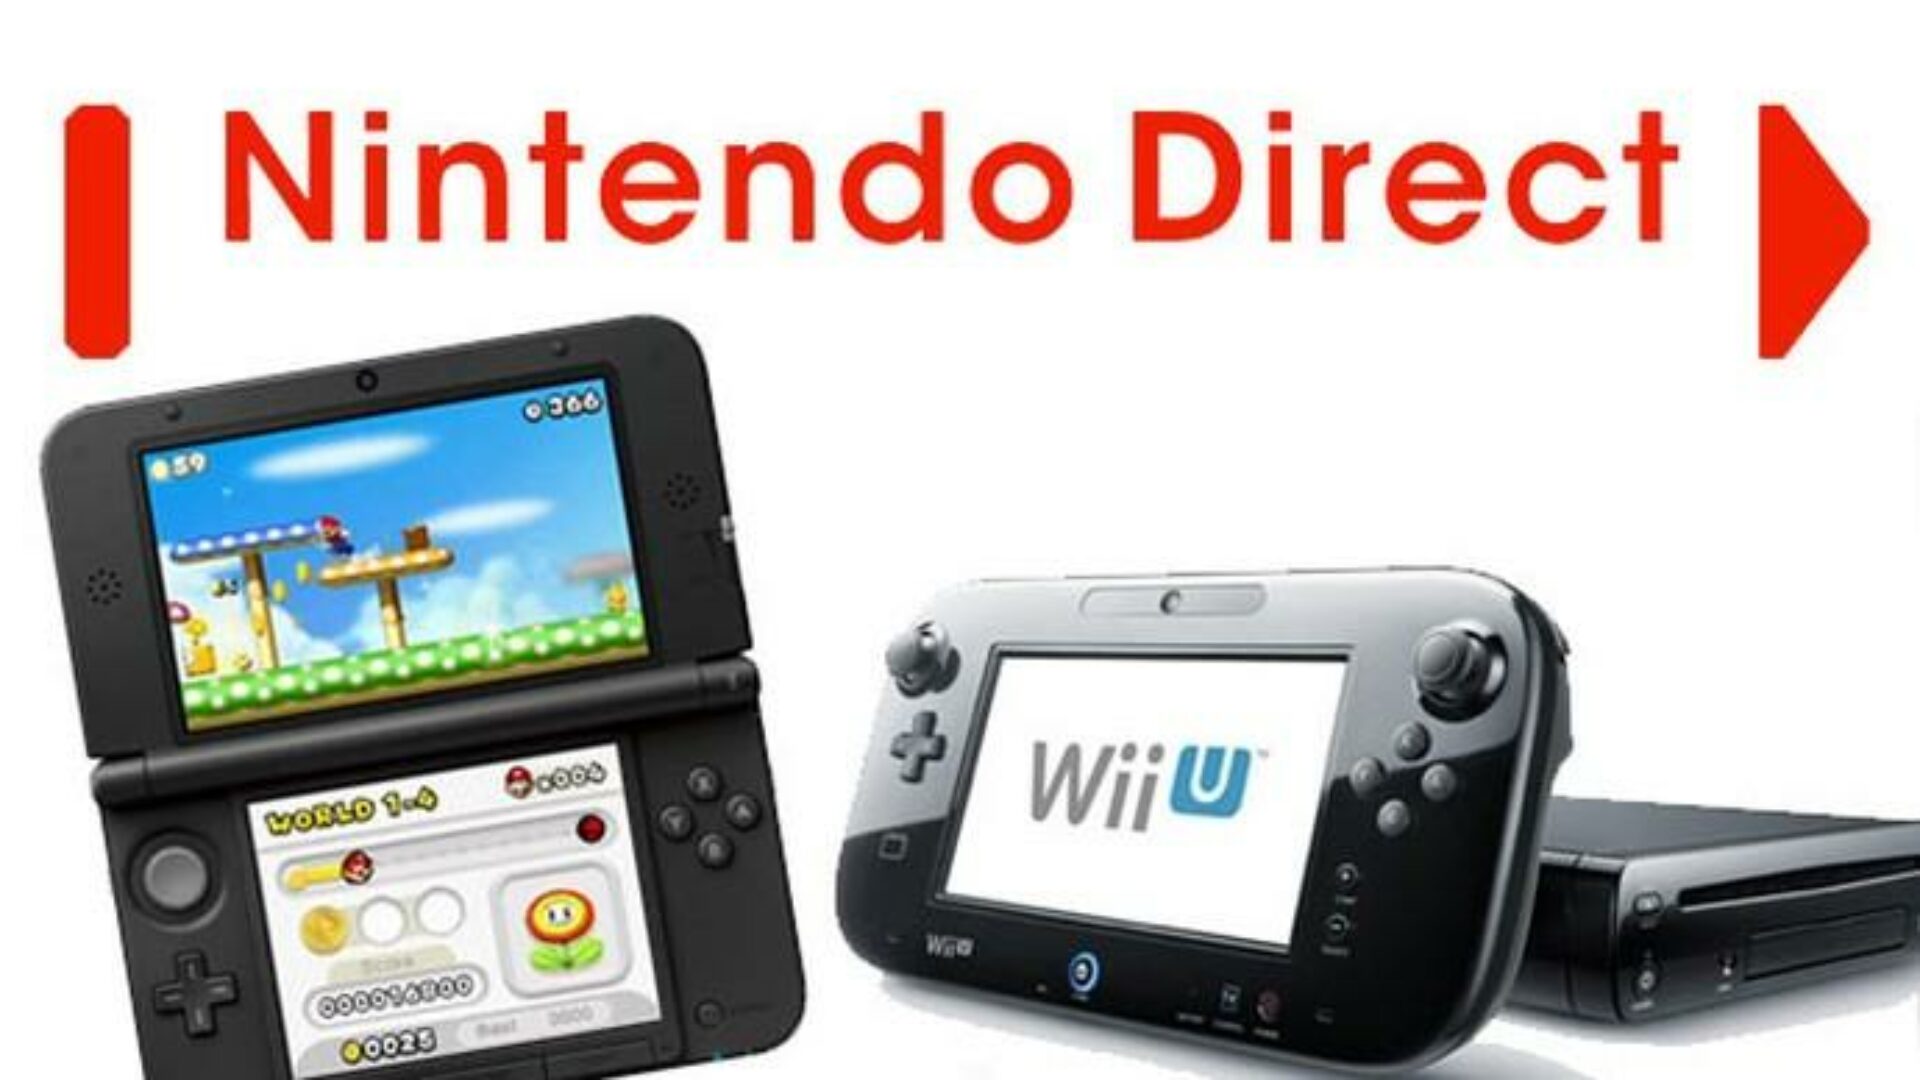 Nintendo Direct Announced for Wednesday, Nov. 5